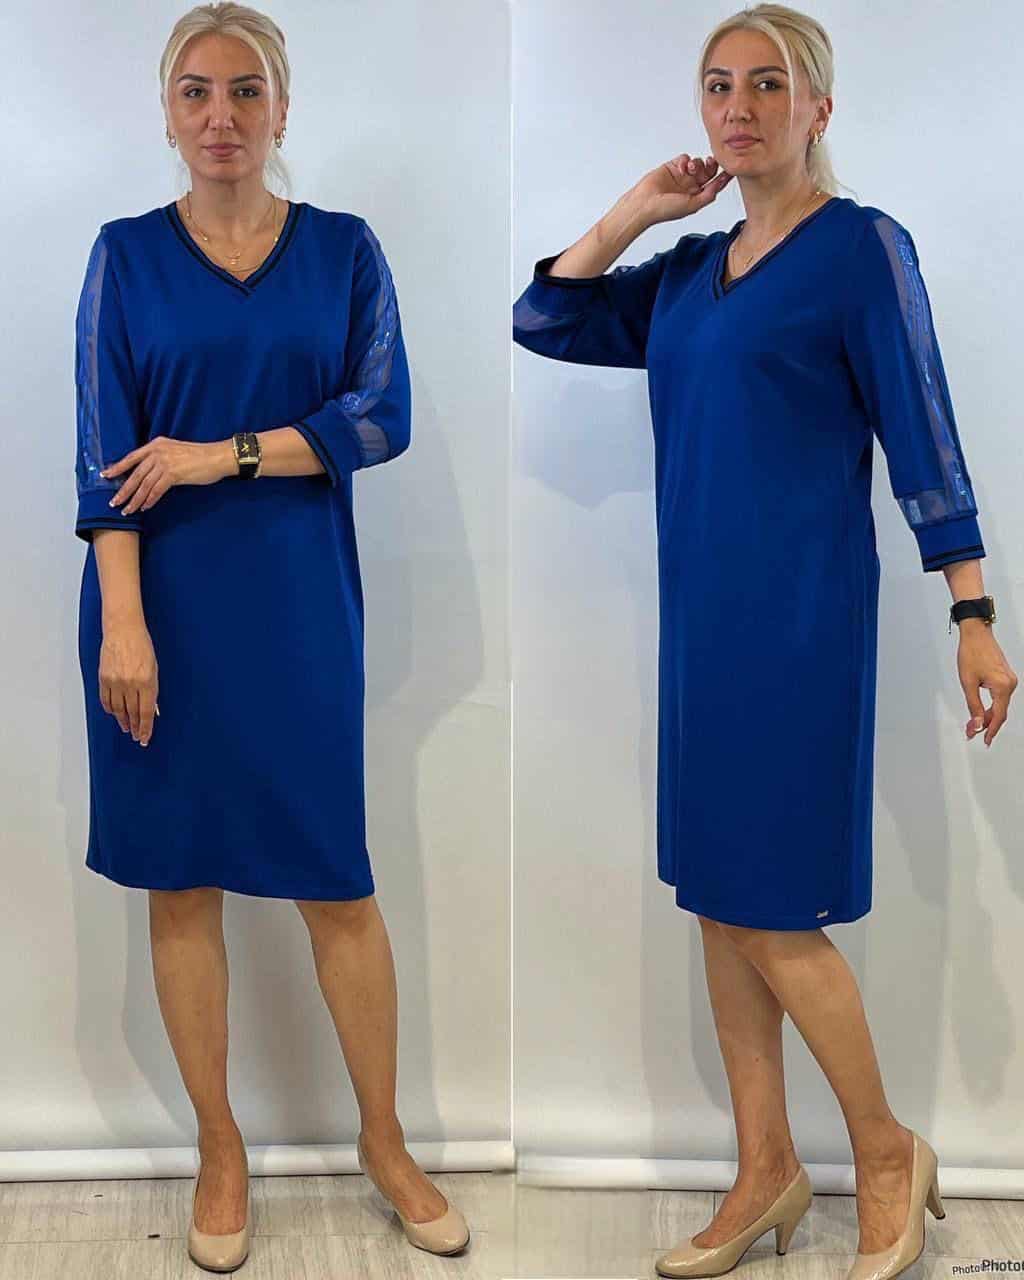 שמלה בשילוב רשת לנשים במידות גדולות בצבע כחול